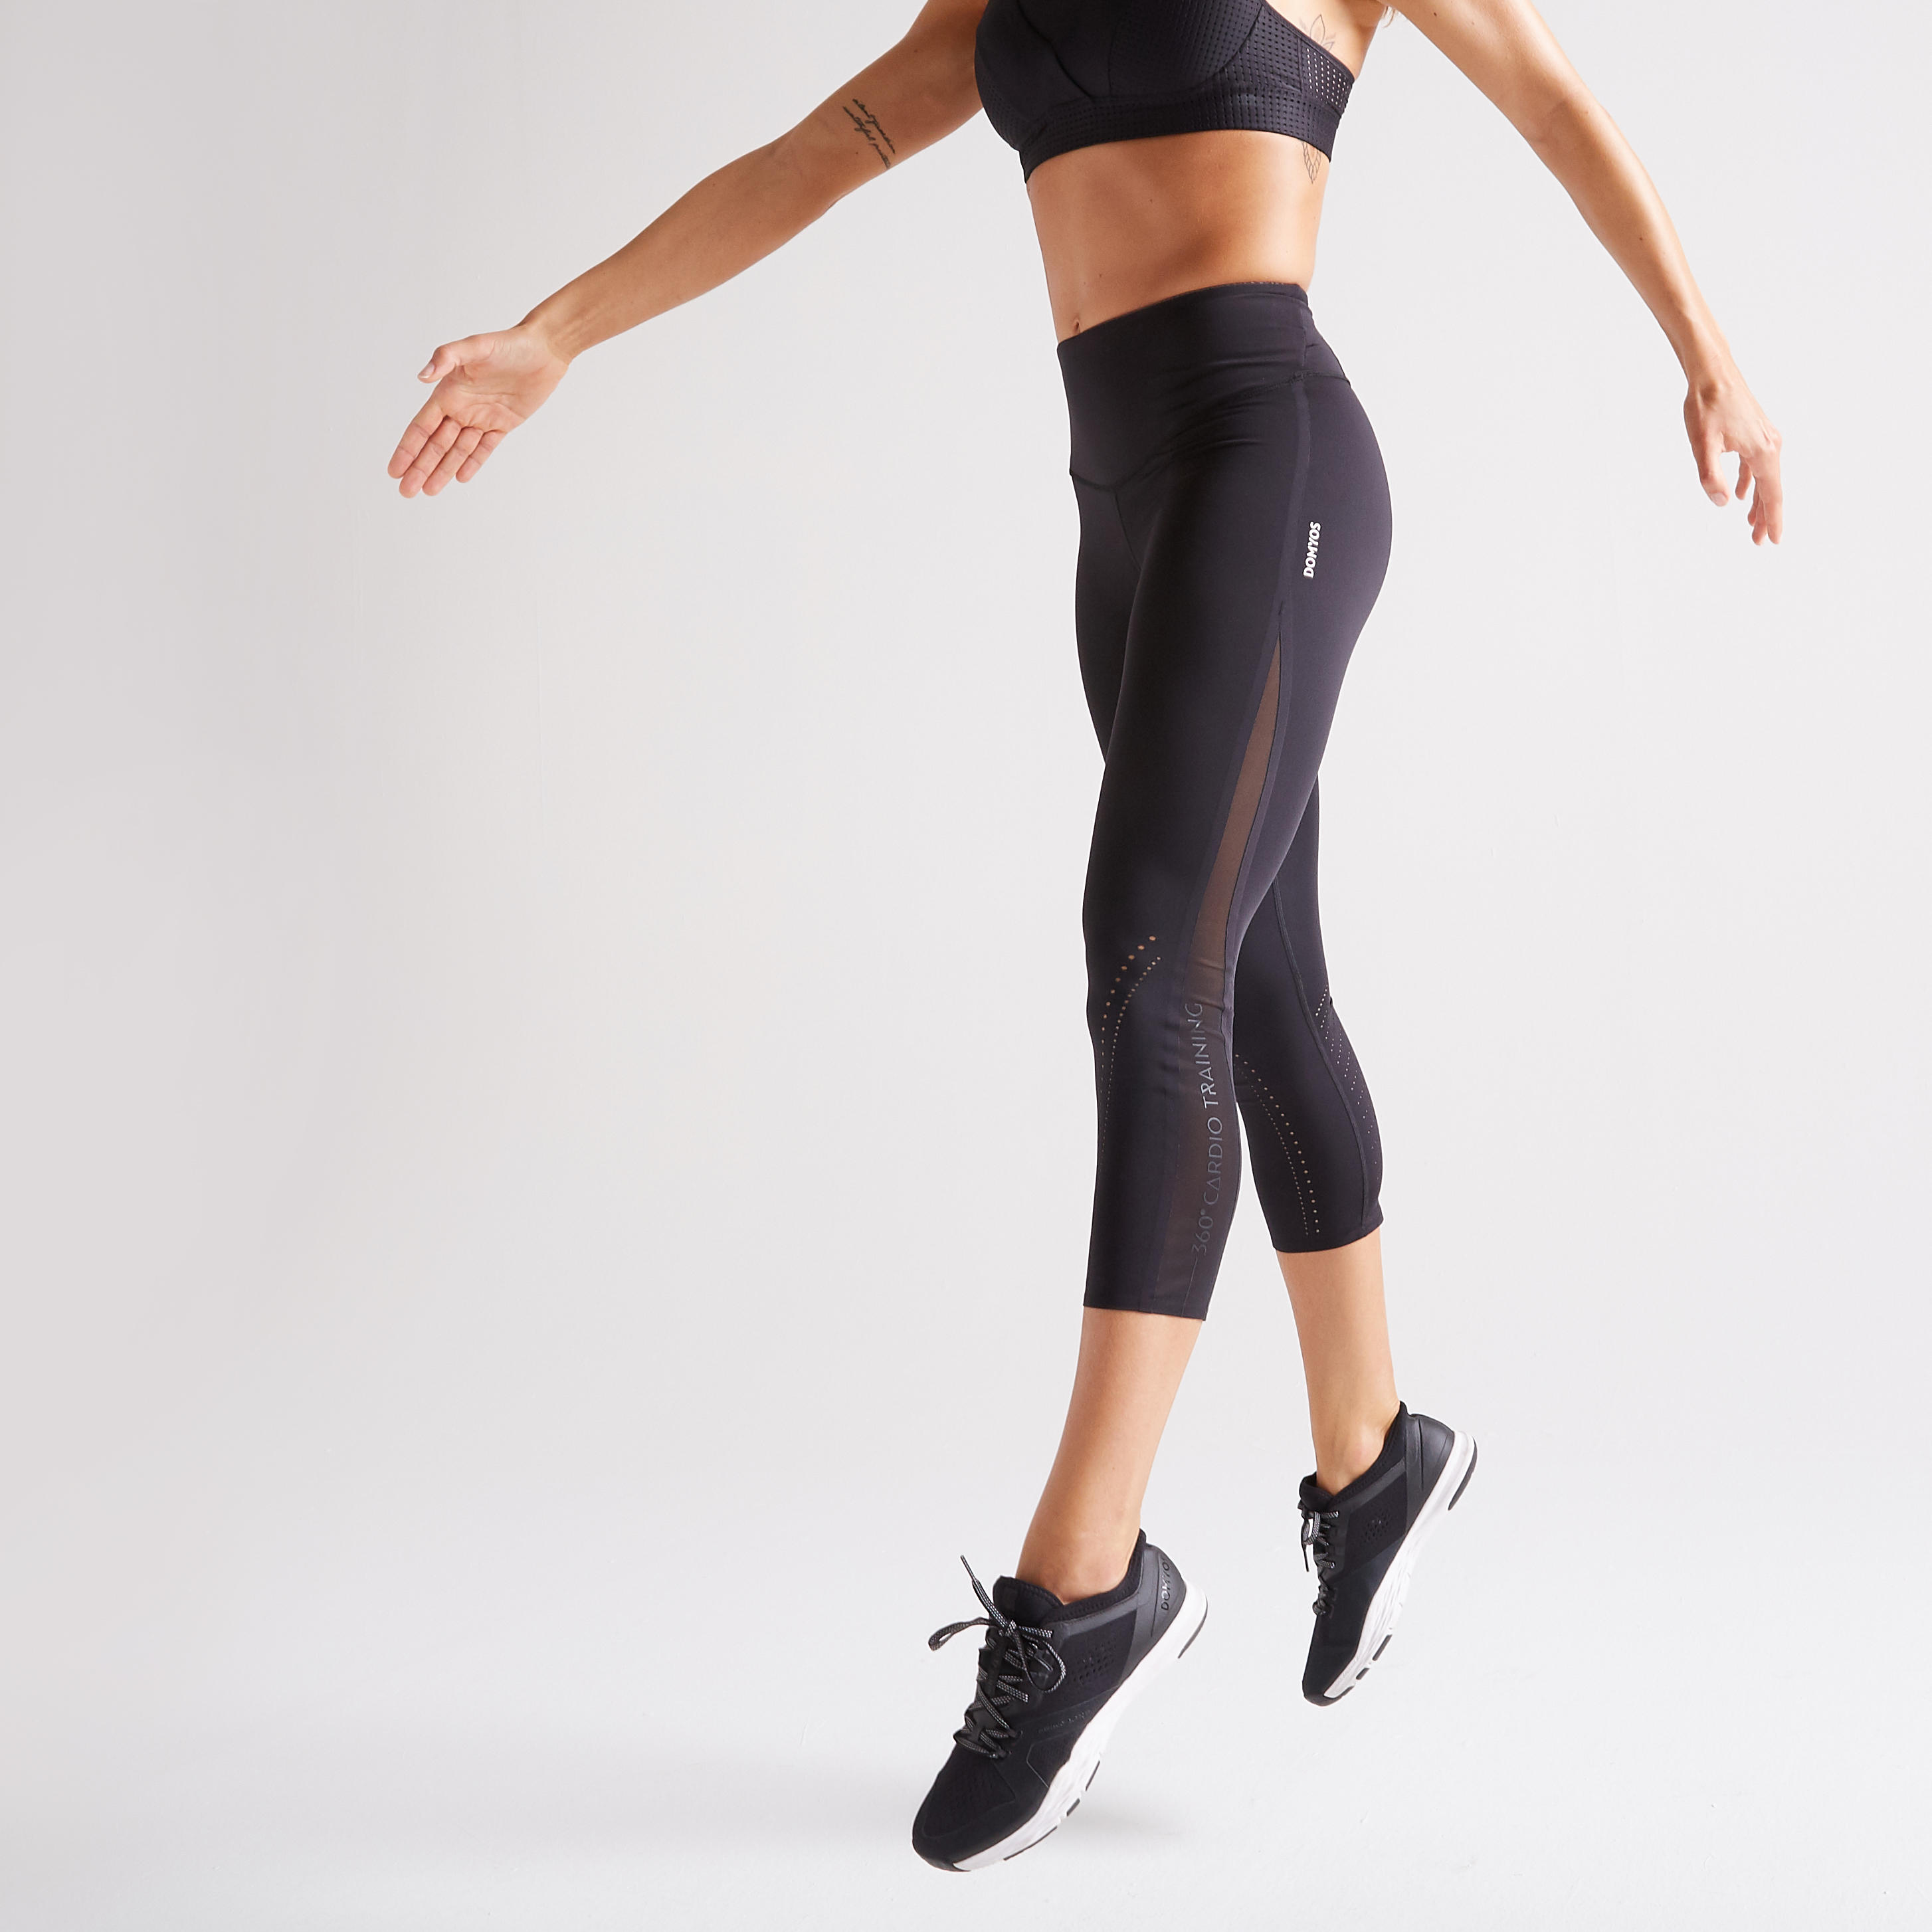 Women's Cardio Fitness High-Waisted Shaping Short Leggings - Black